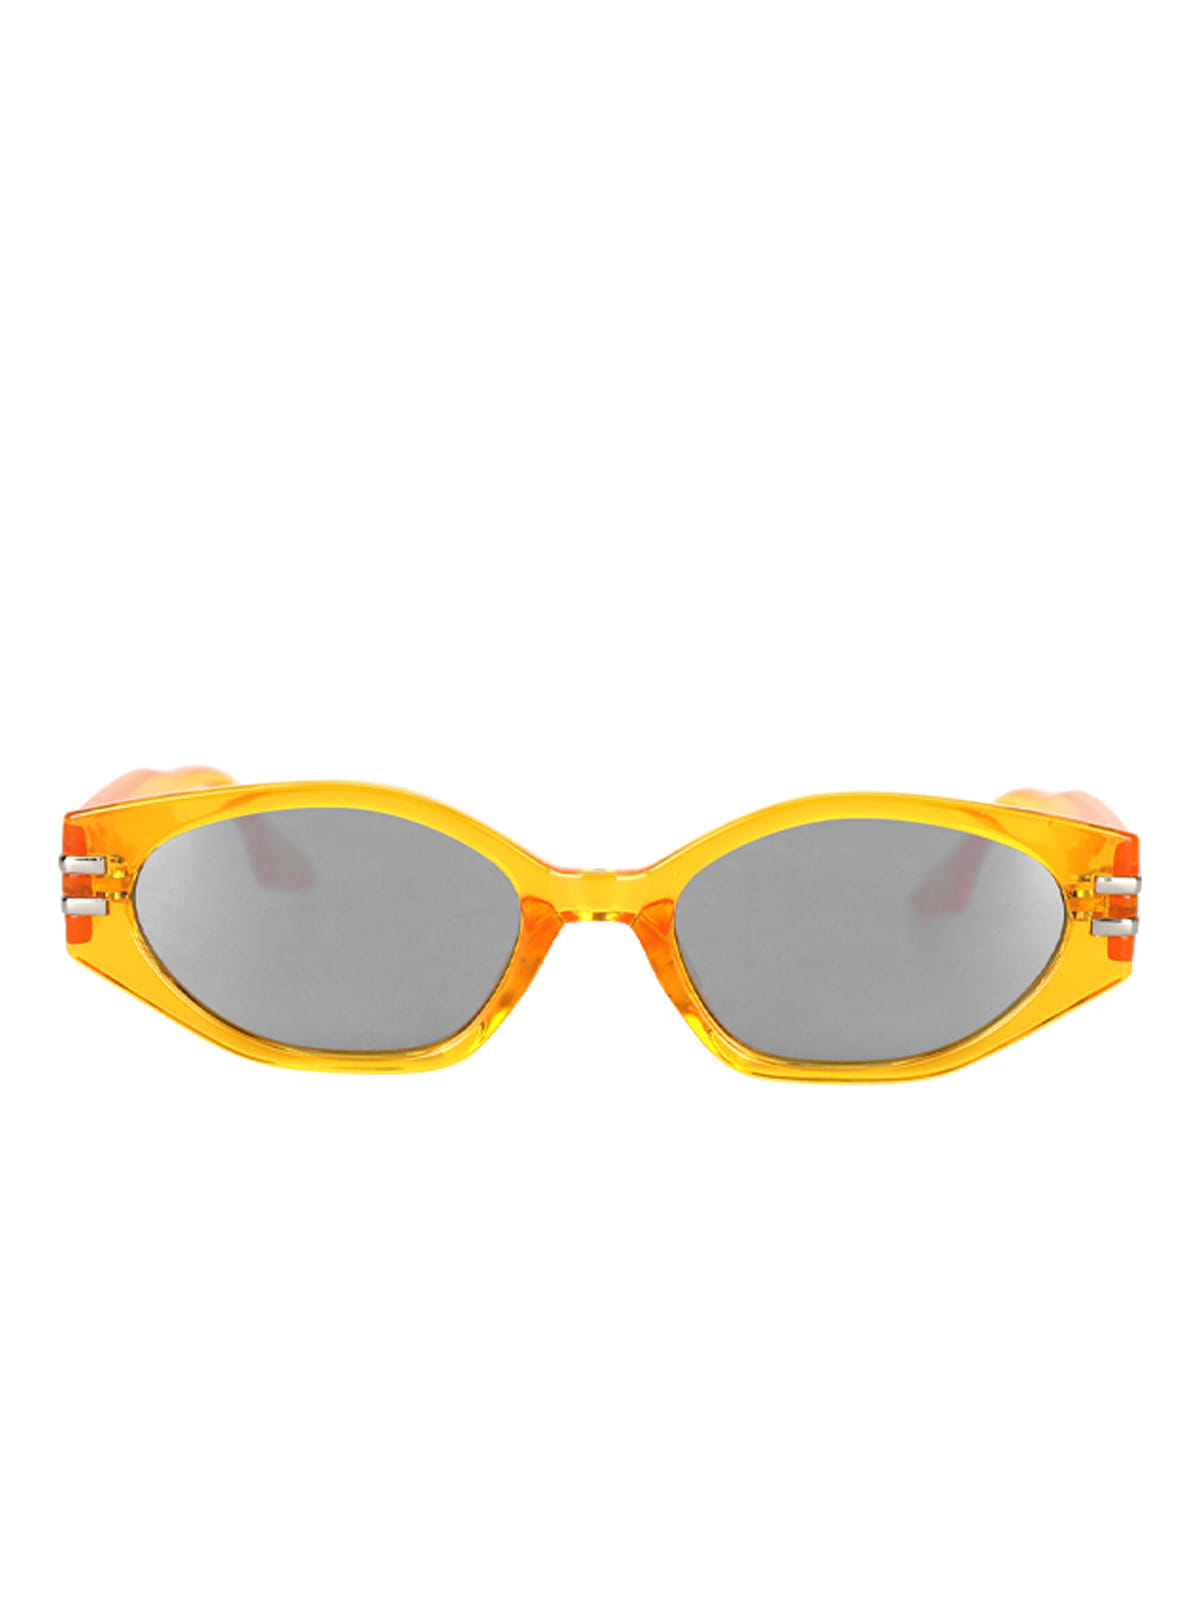 여성 선글라스 LVI042 자외선 차단 여름 아이웨어